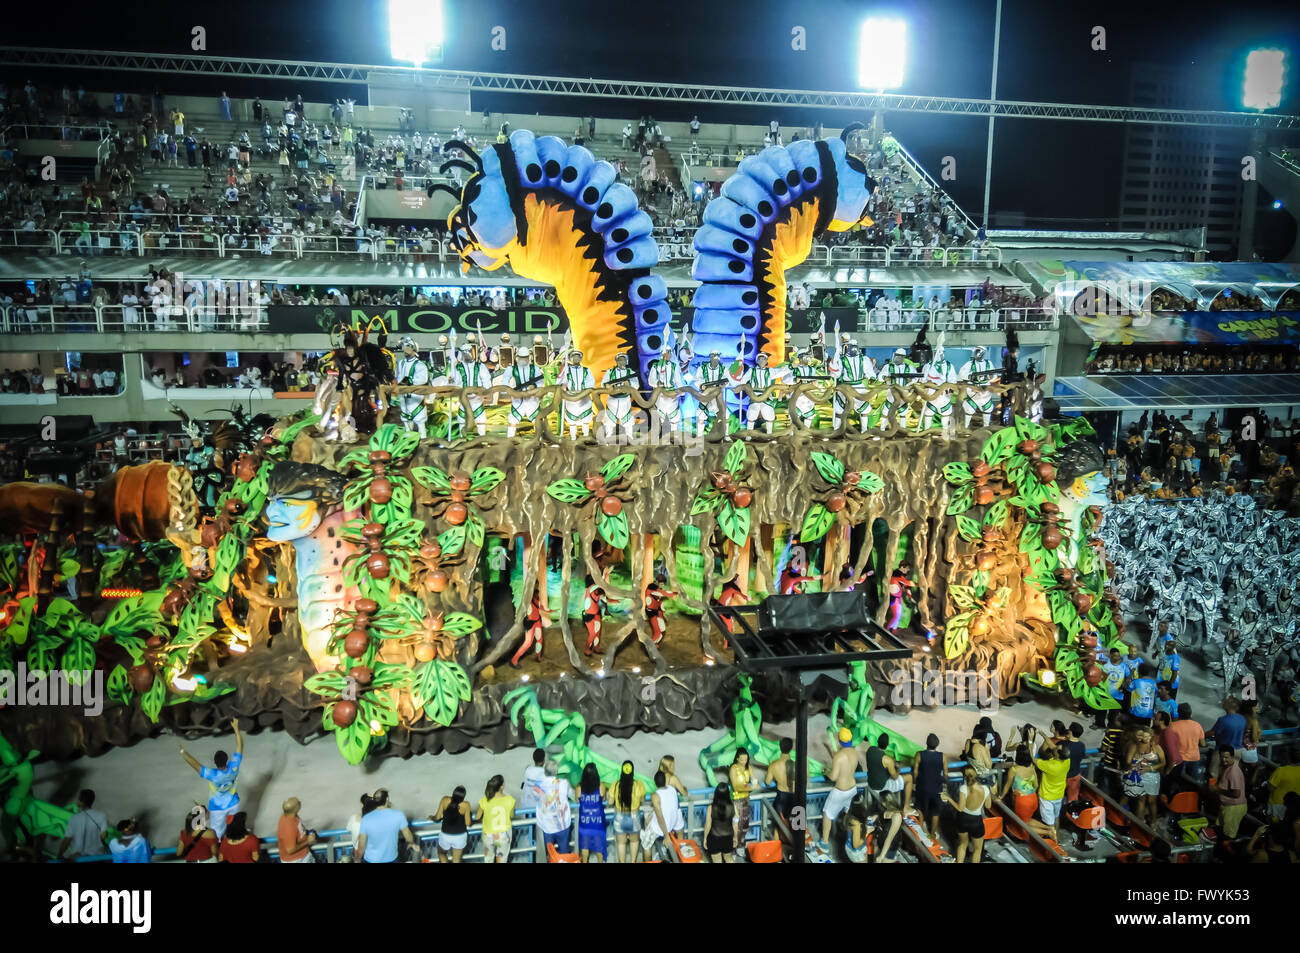 Die Sambaschule Unidos da Tijuca paradieren am Rio Karneval 2016. Allegorische Wagen und Interpreten auf dem Sambodromo paradieren Stockfoto